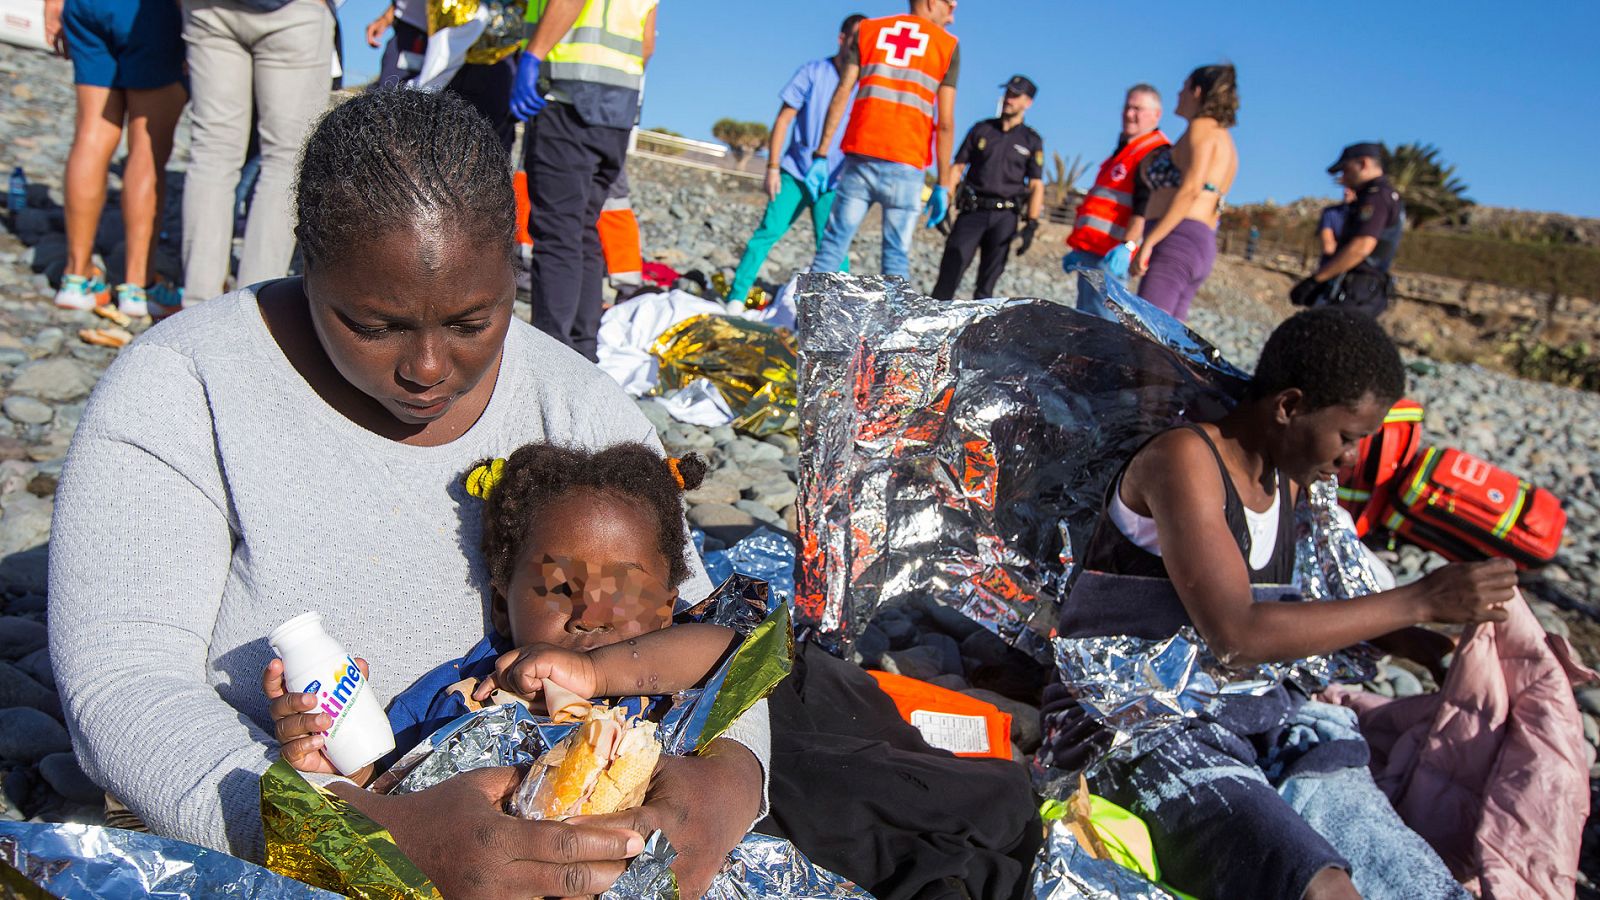 Inmigración - Llega una patera con 24 personas a bordo a Gran Canaria - RTVE.es